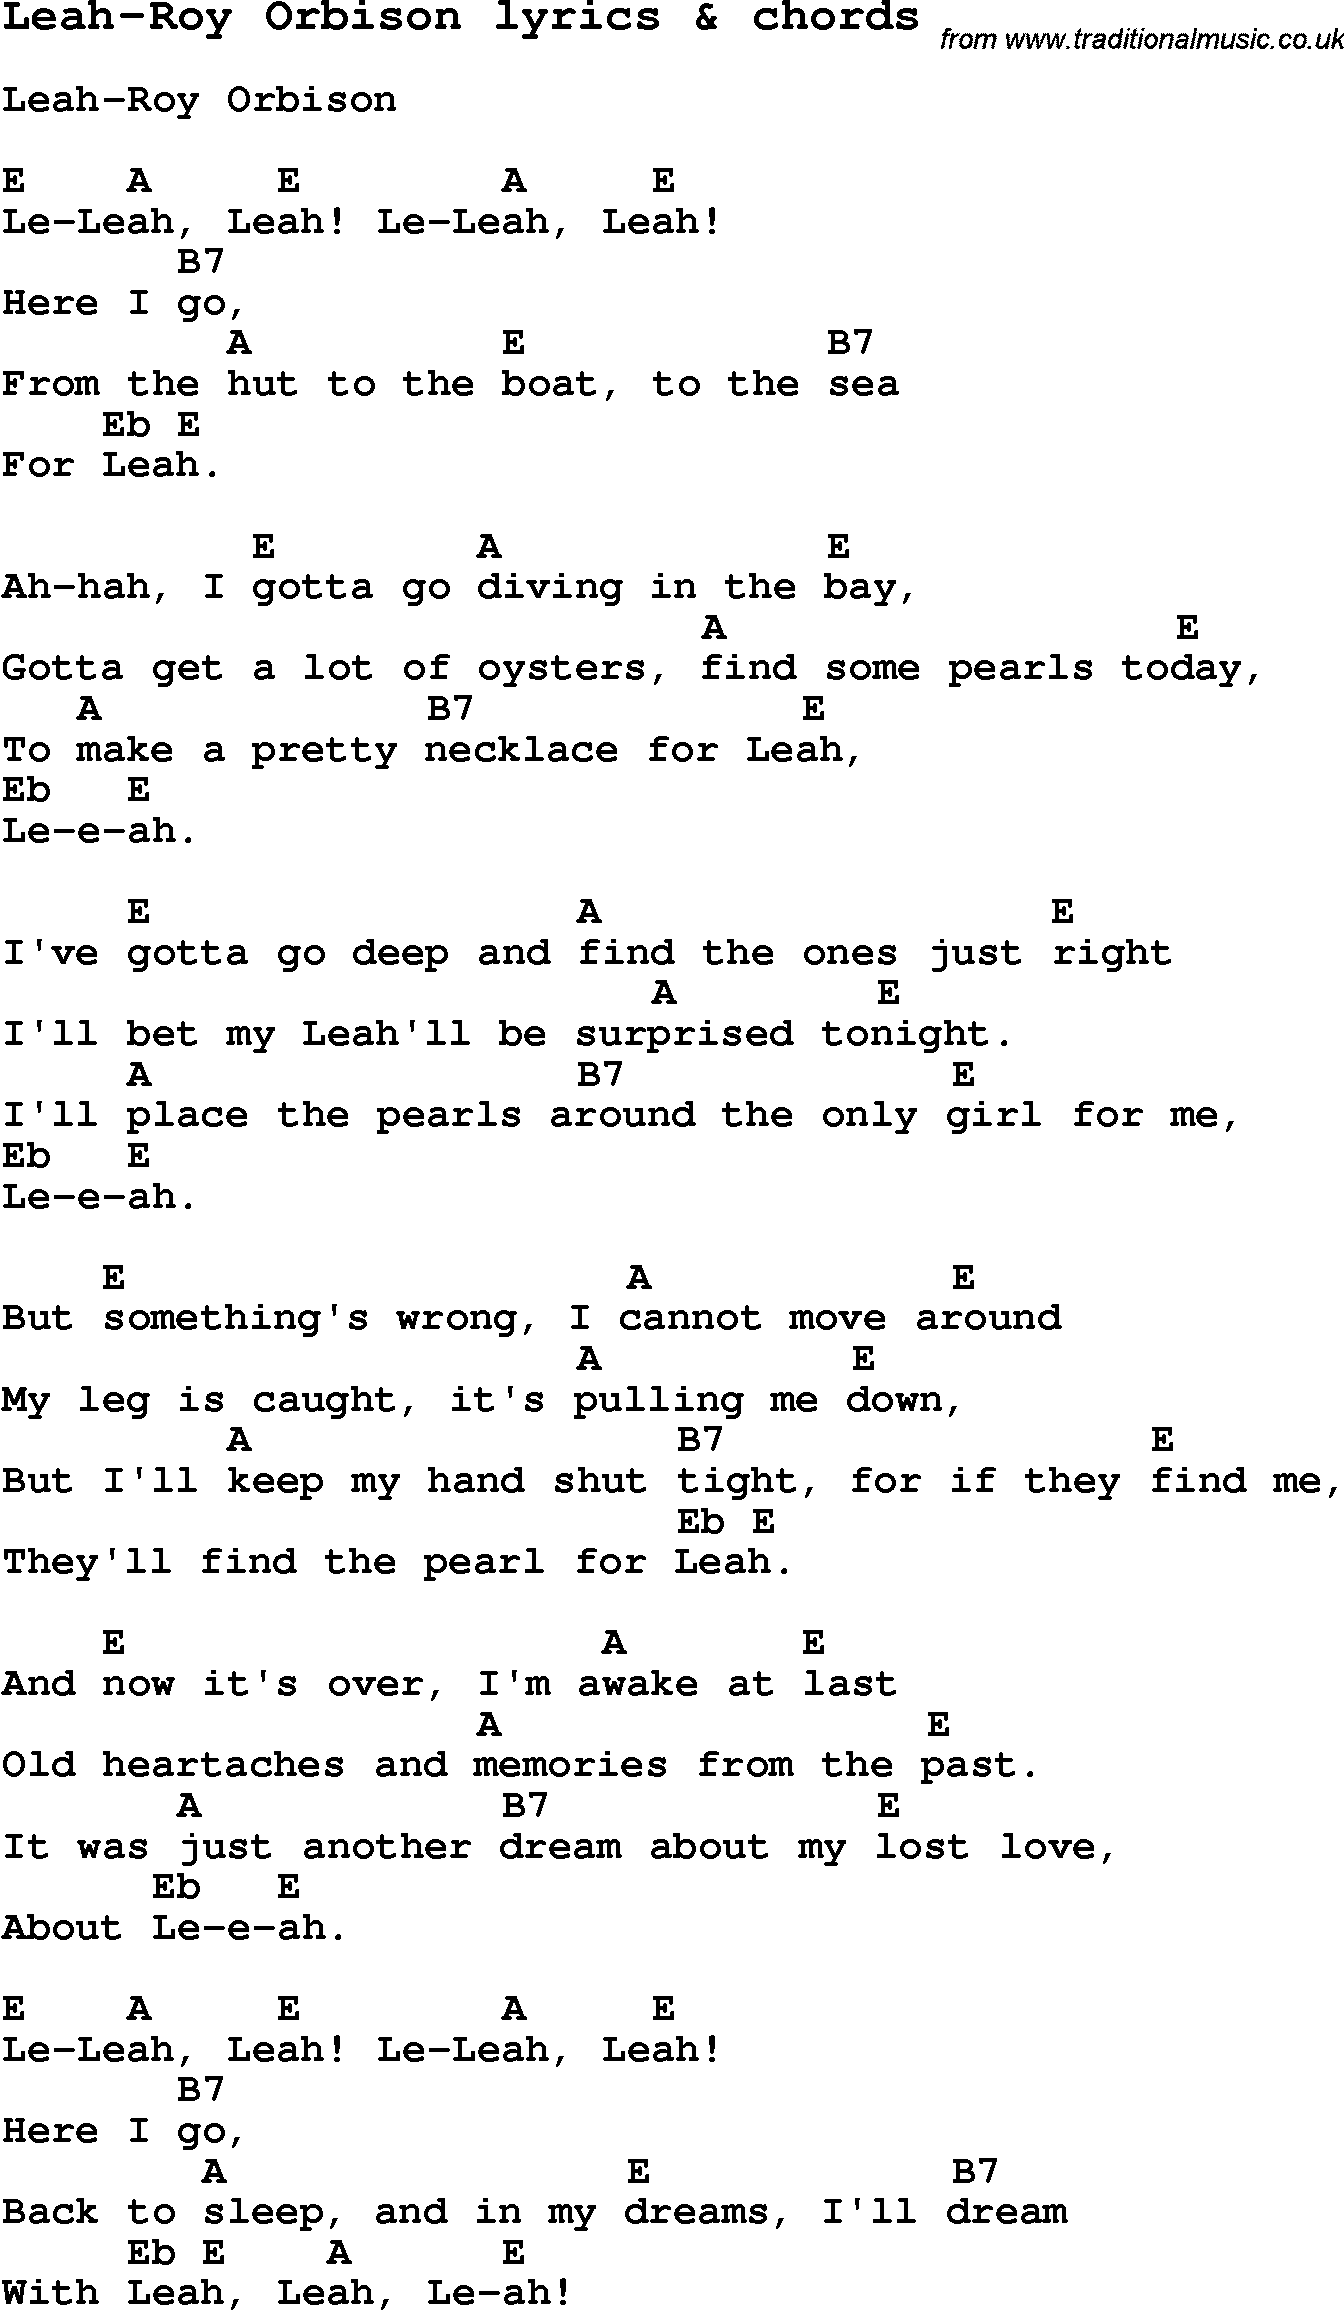 Love Song Lyrics for: Leah-Roy Orbison with chords for Ukulele, Guitar Banjo etc.